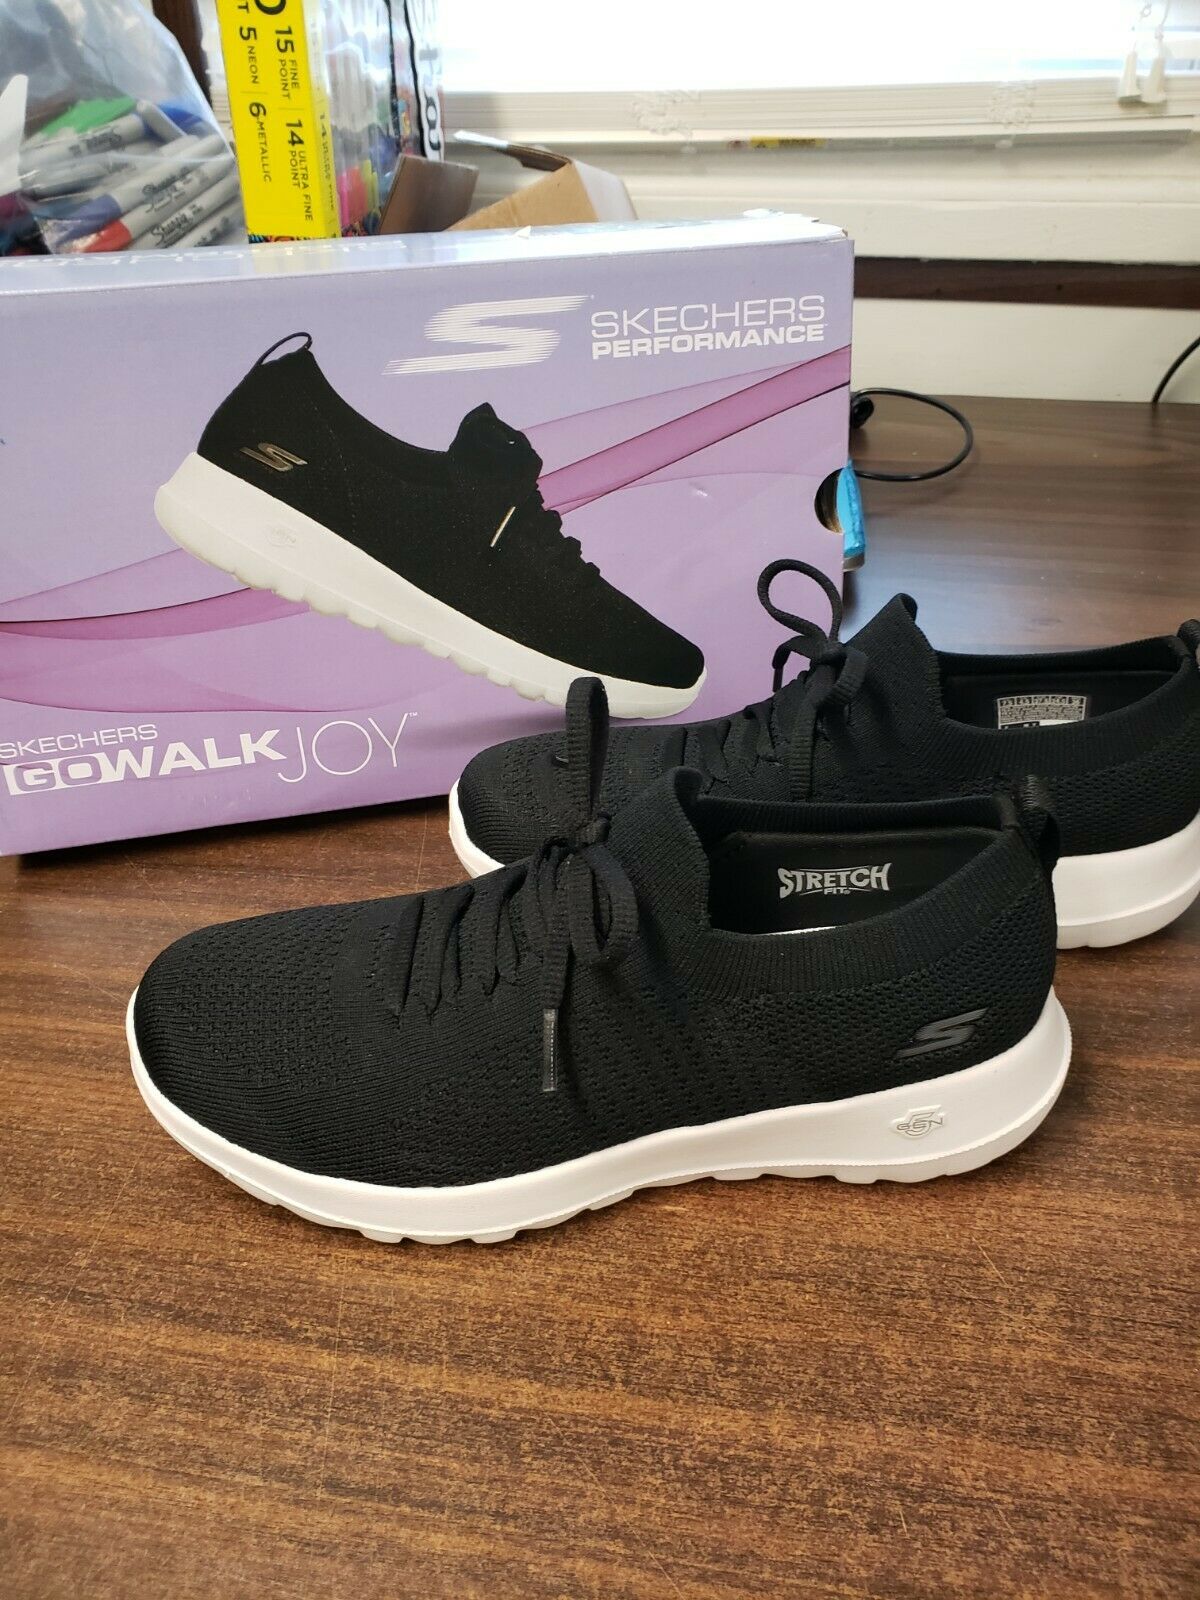 New- Skechers Ladies' GoWalk Joy Ortholite Slip On Shoes - Washable Size 7